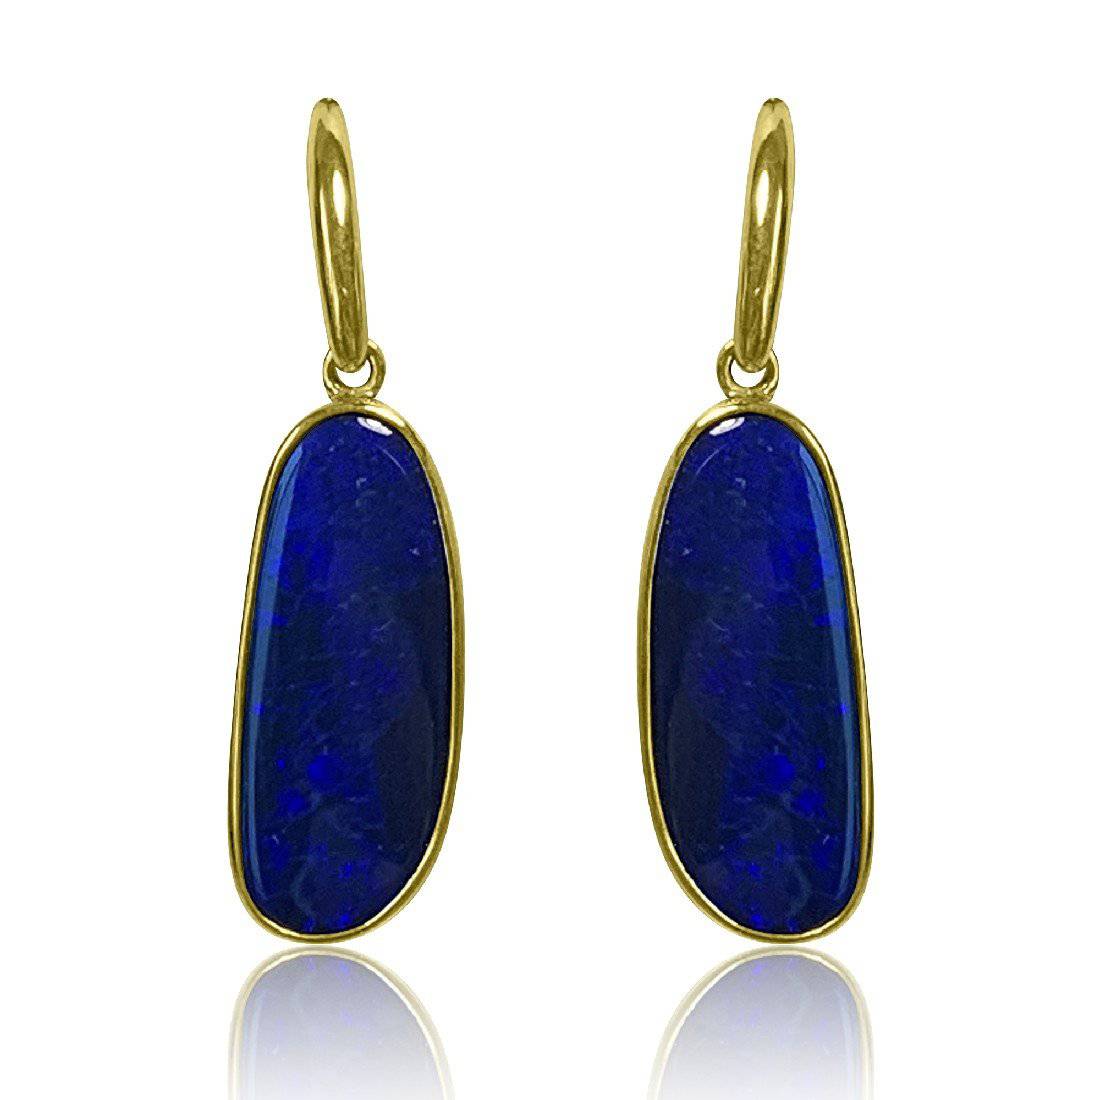 9kt Yellow Gold Opal earrings - Masterpiece Jewellery Opal & Gems Sydney Australia | Online Shop